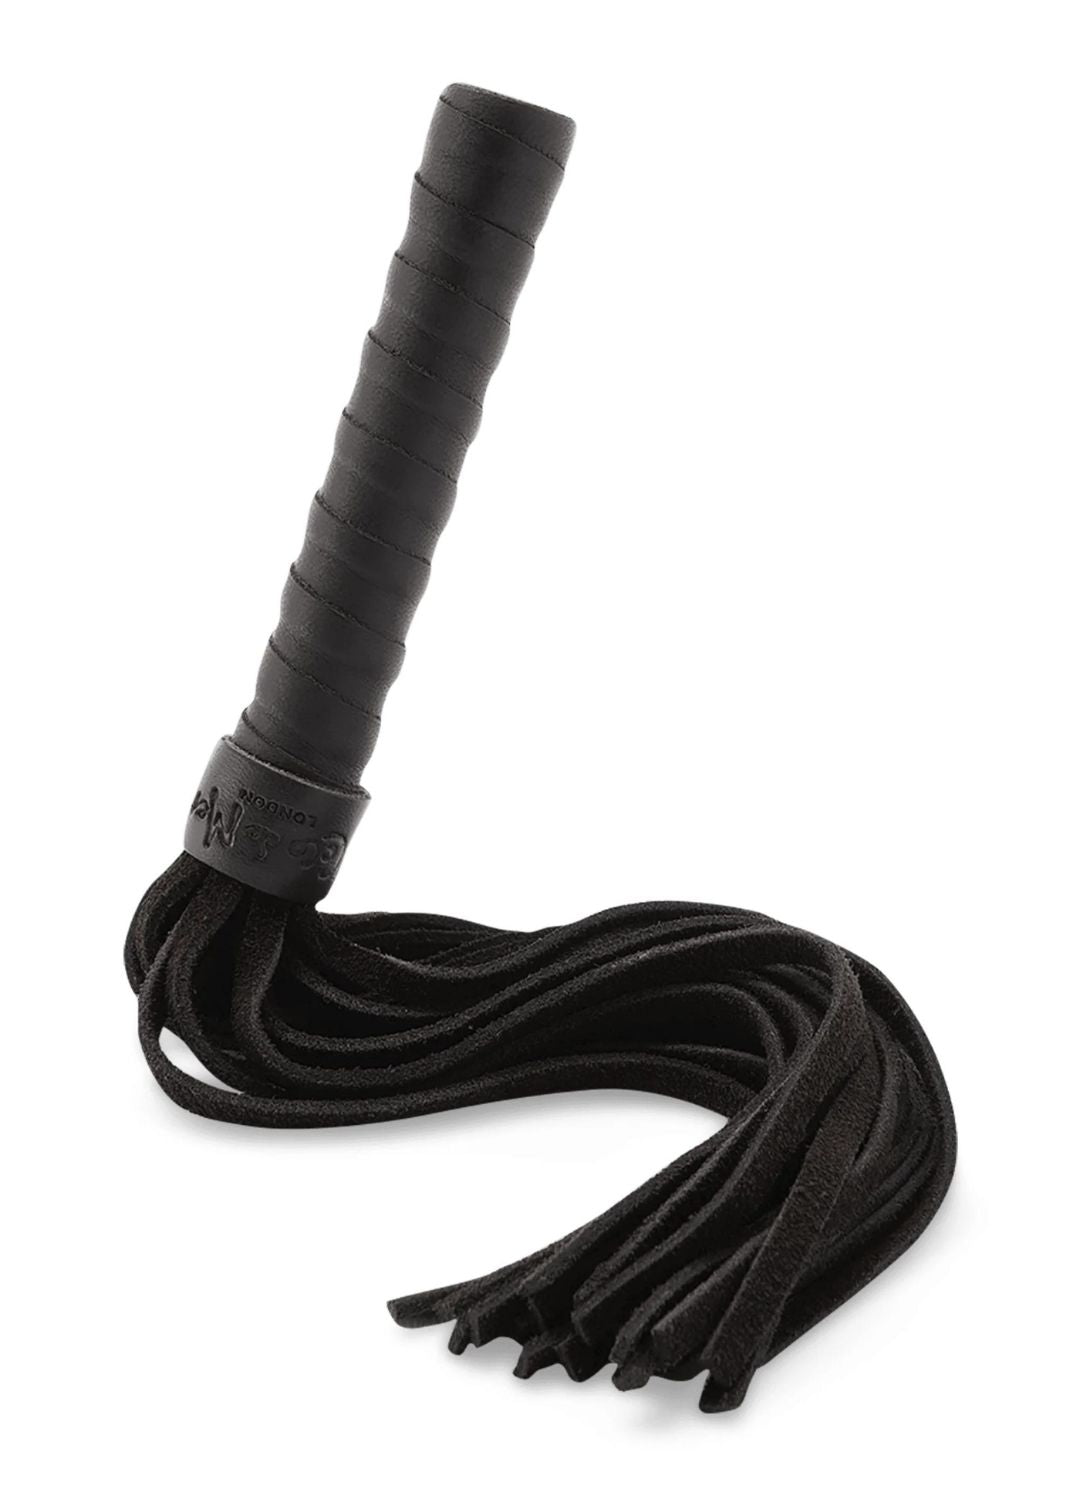 Buy Black Leather Bondage Essentials Kit